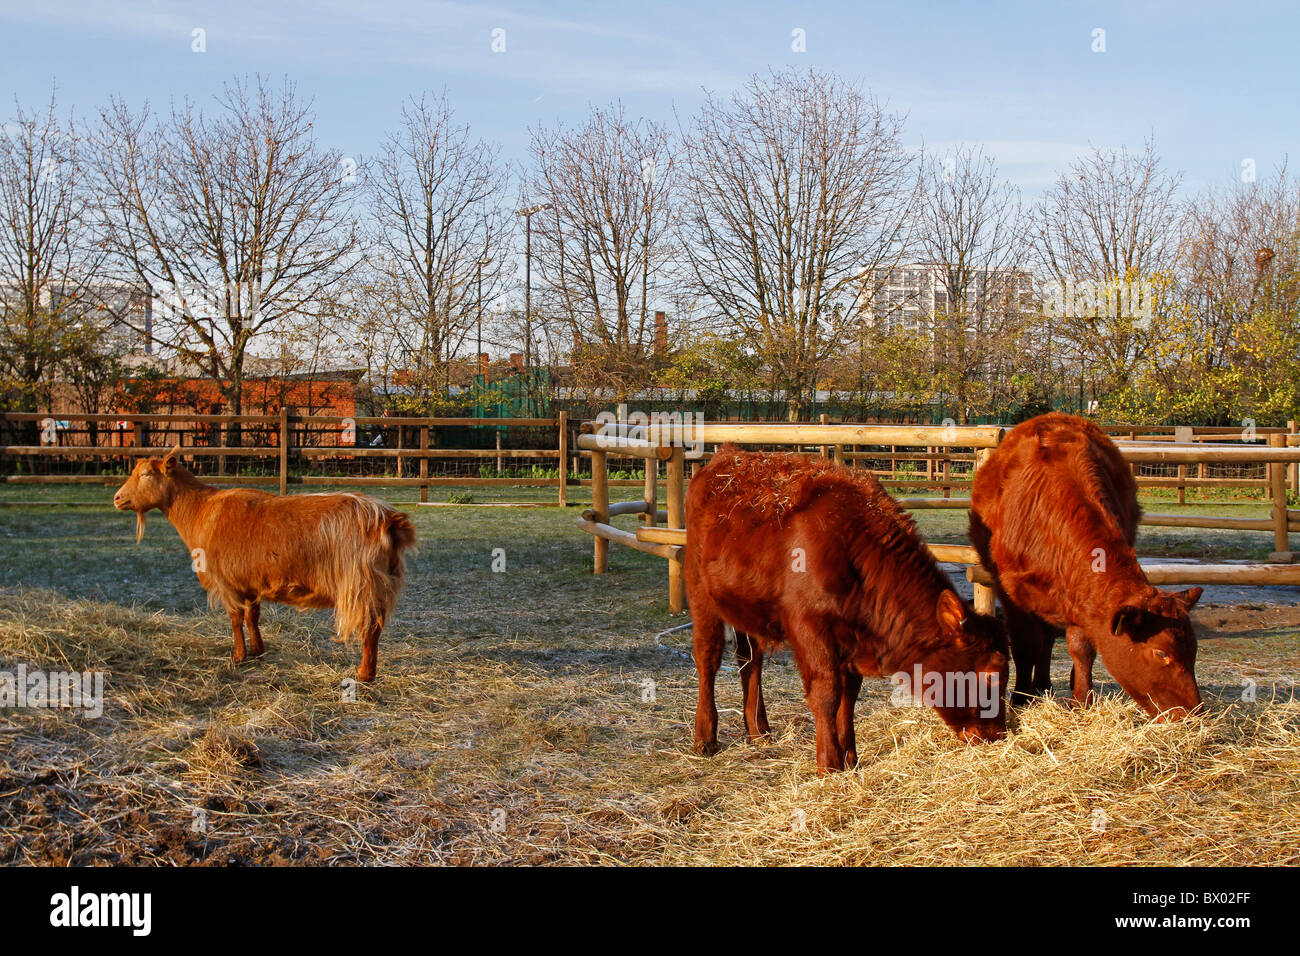 Animals at Hackney City Farm, London, England Stock Photo